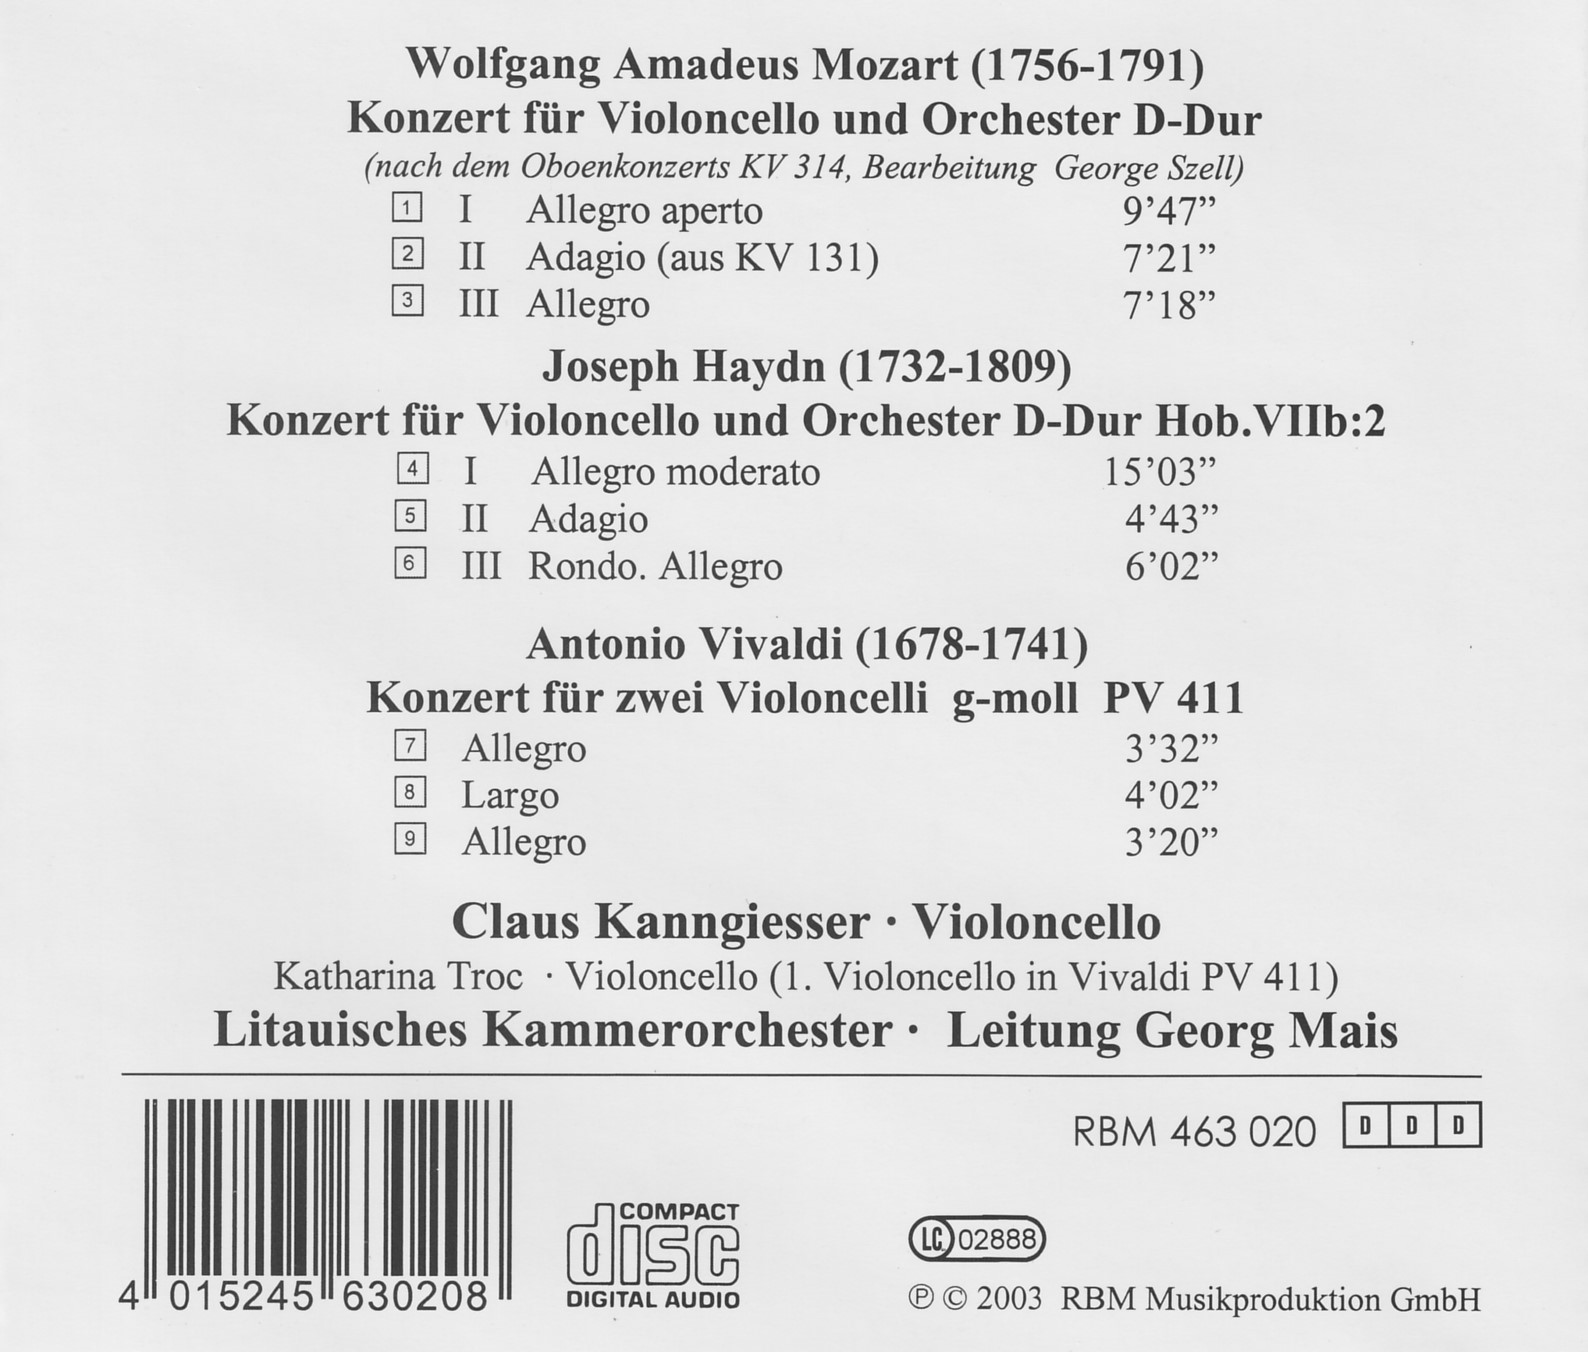 Mozart/Haydn/Vivaldi - Konzerte für Violoncello